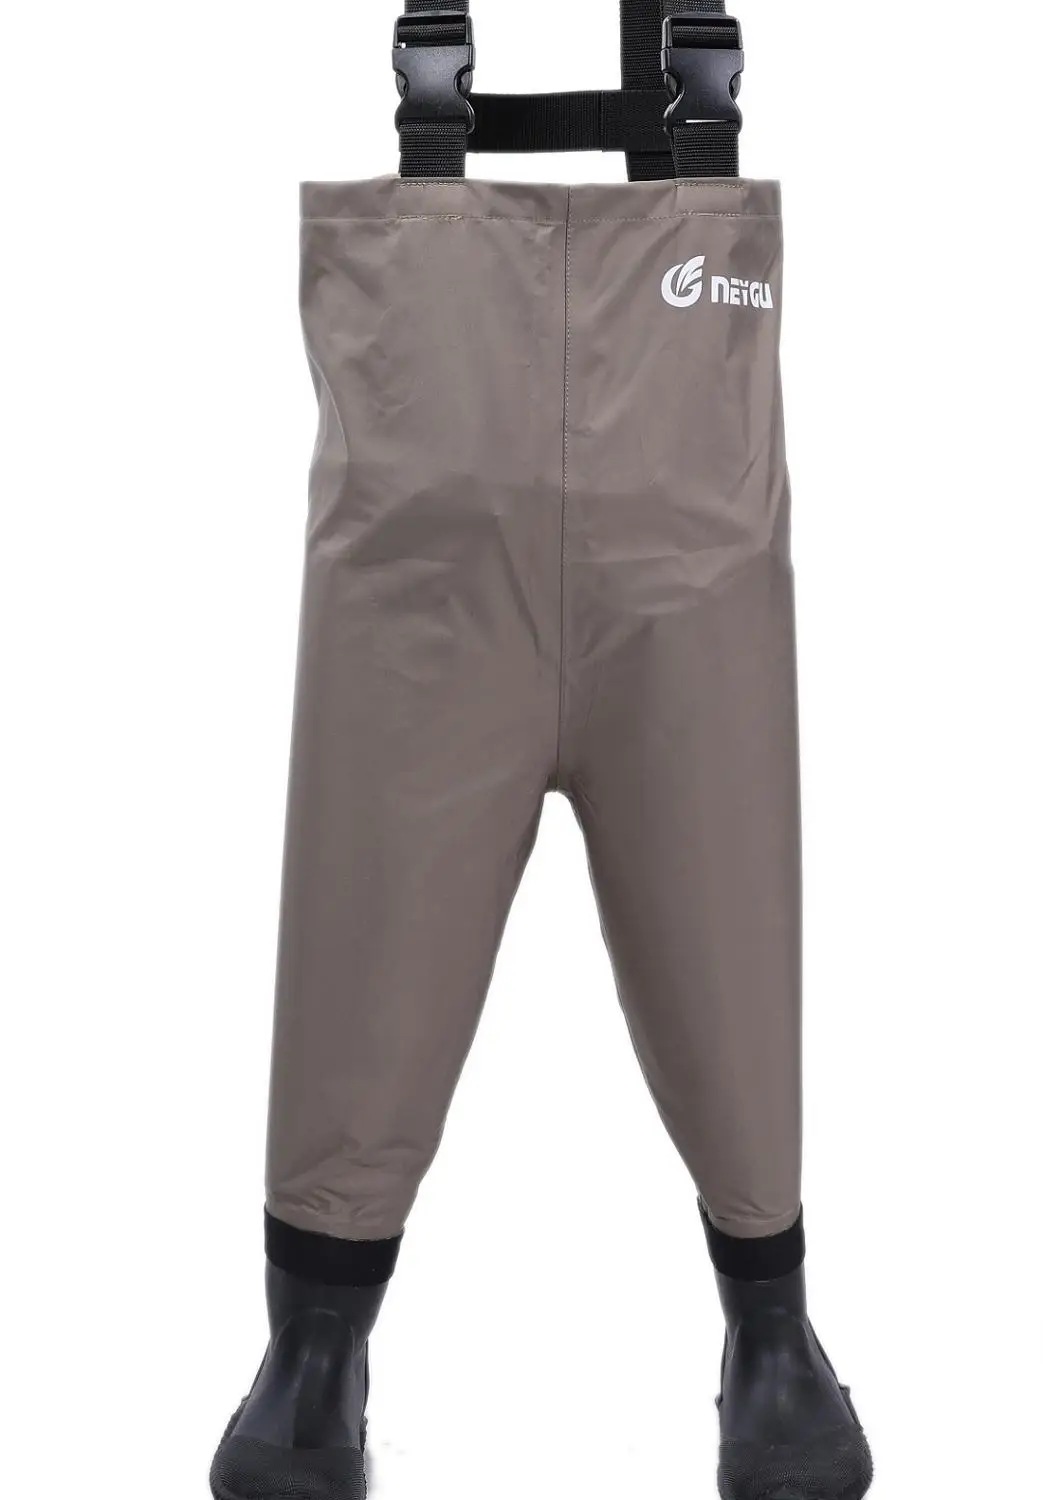 NEYGU/Детские комбинезоны; спортивные водонепроницаемые штаны для рыбалки, плавания, гребли, катания на лодках, каноэ, От 2 до 6 лет - Цвет: army green